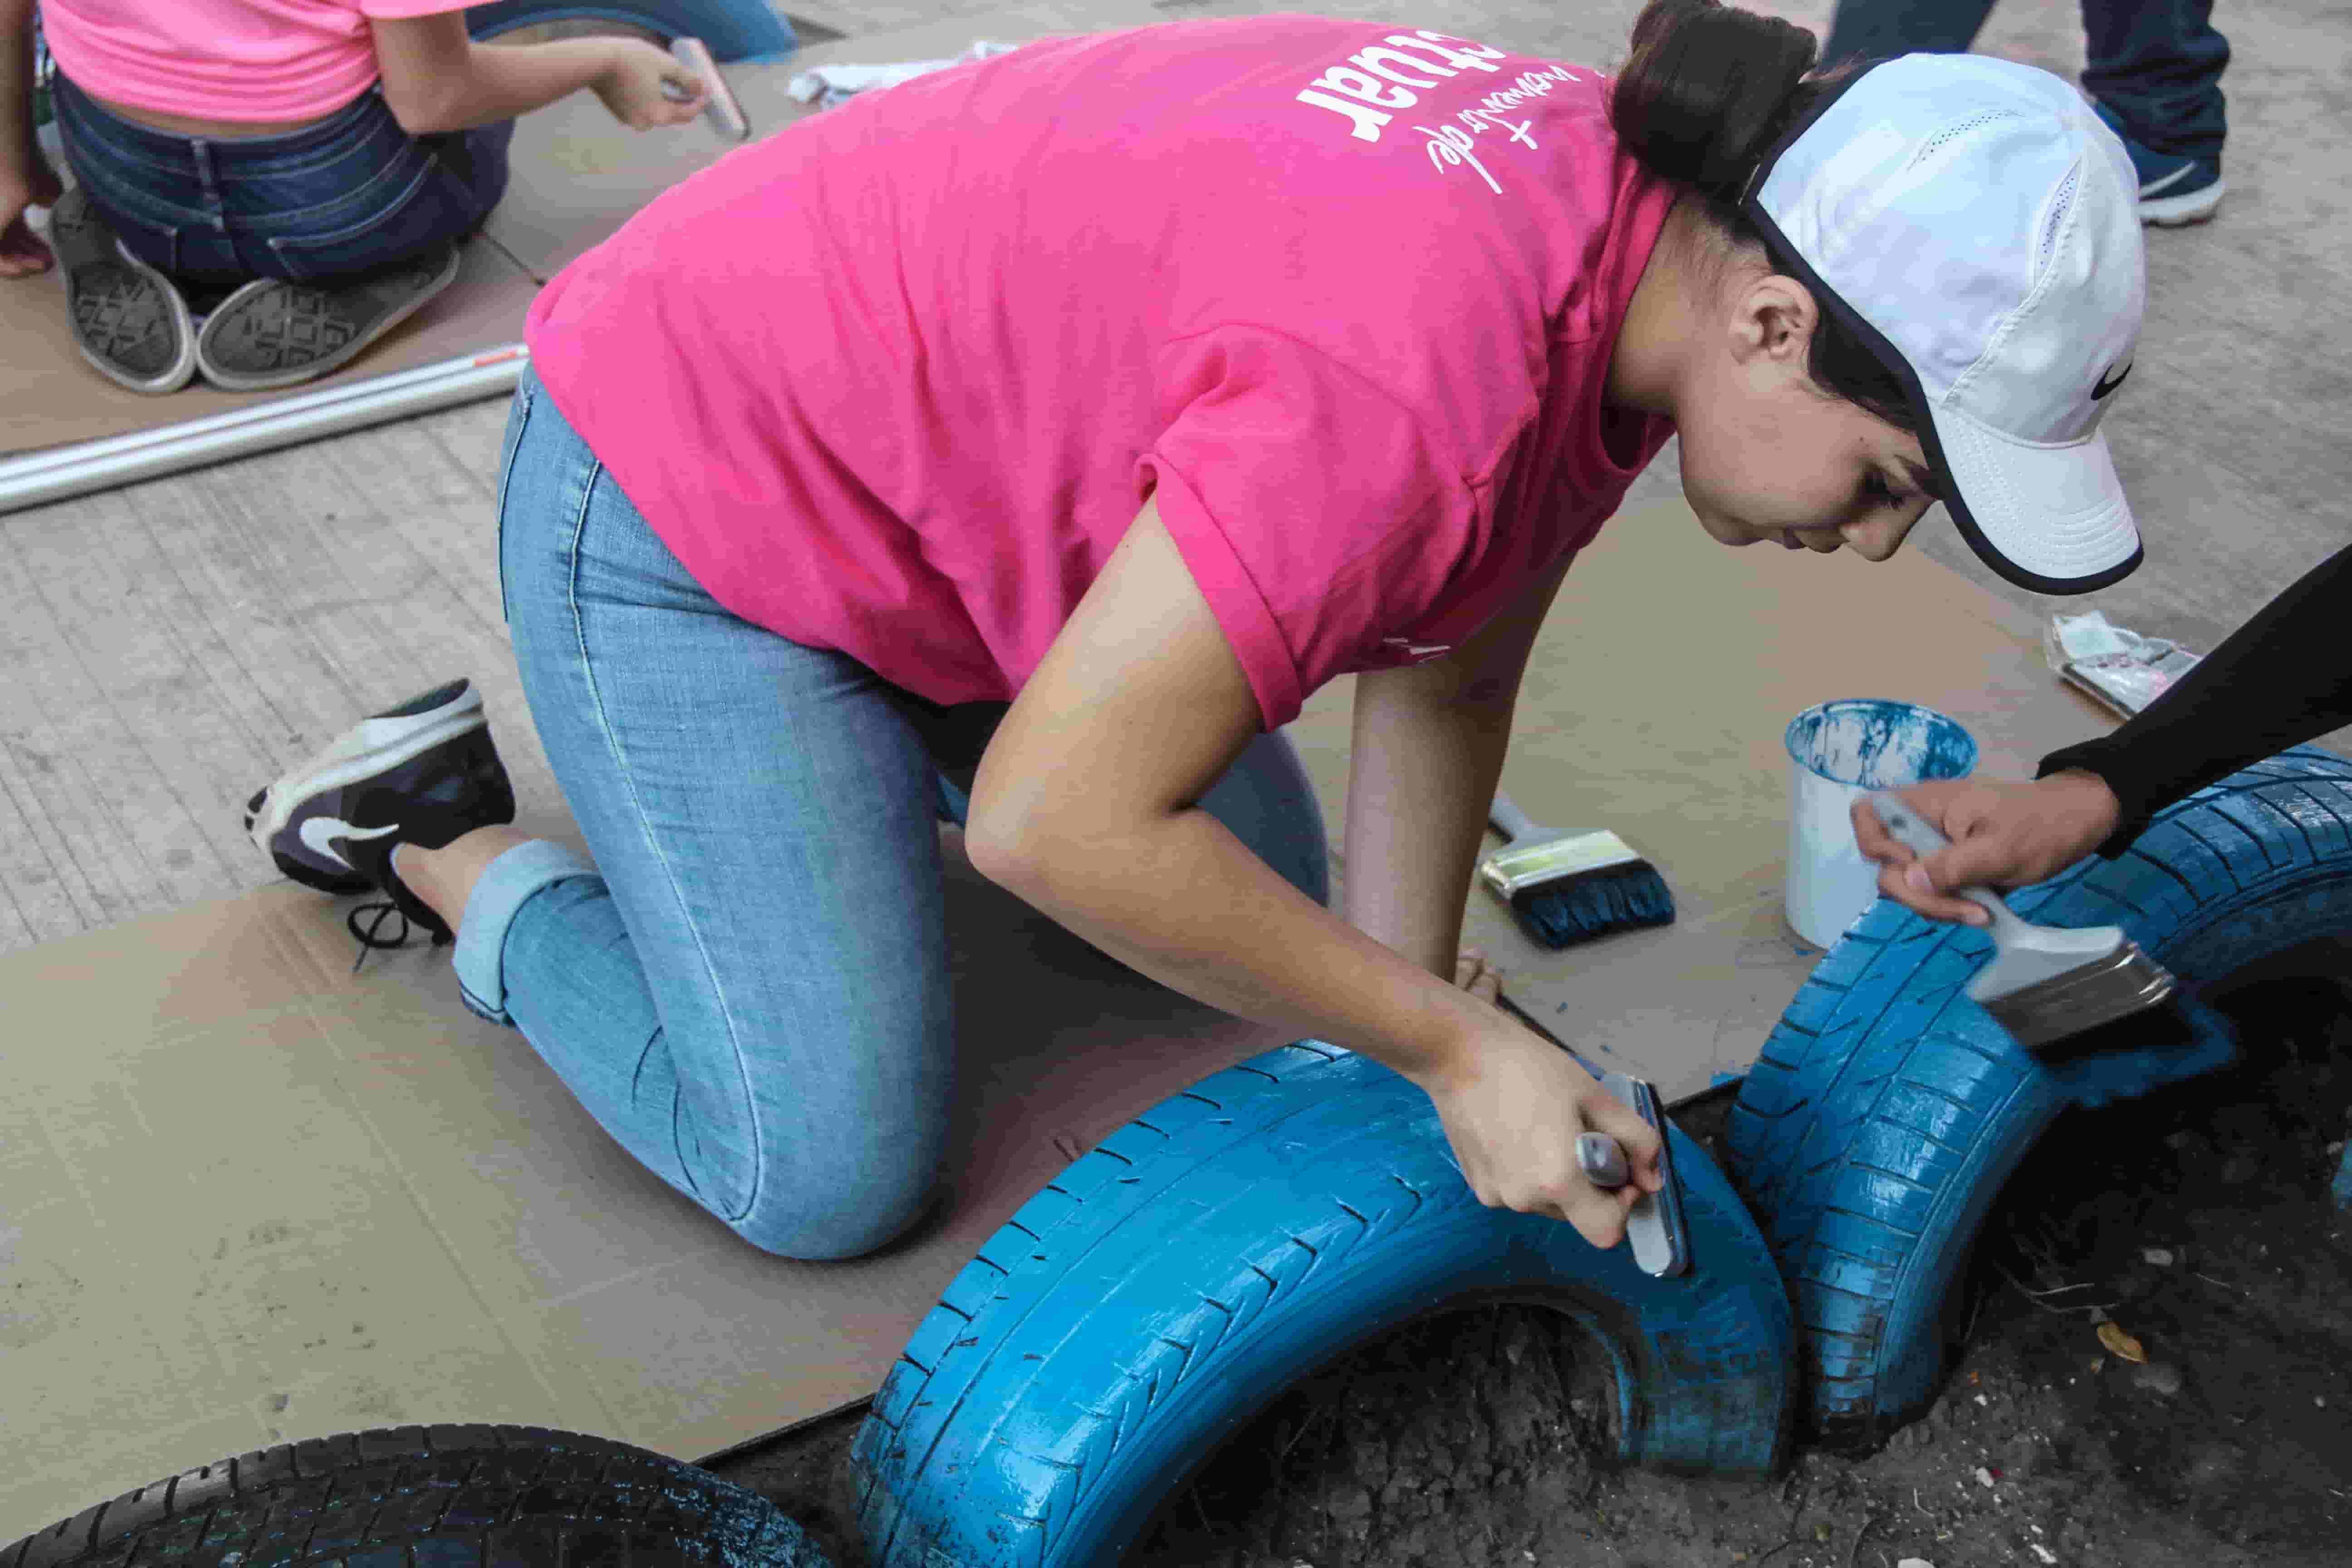 Día del voluntariado en el Tec Campus Tampico